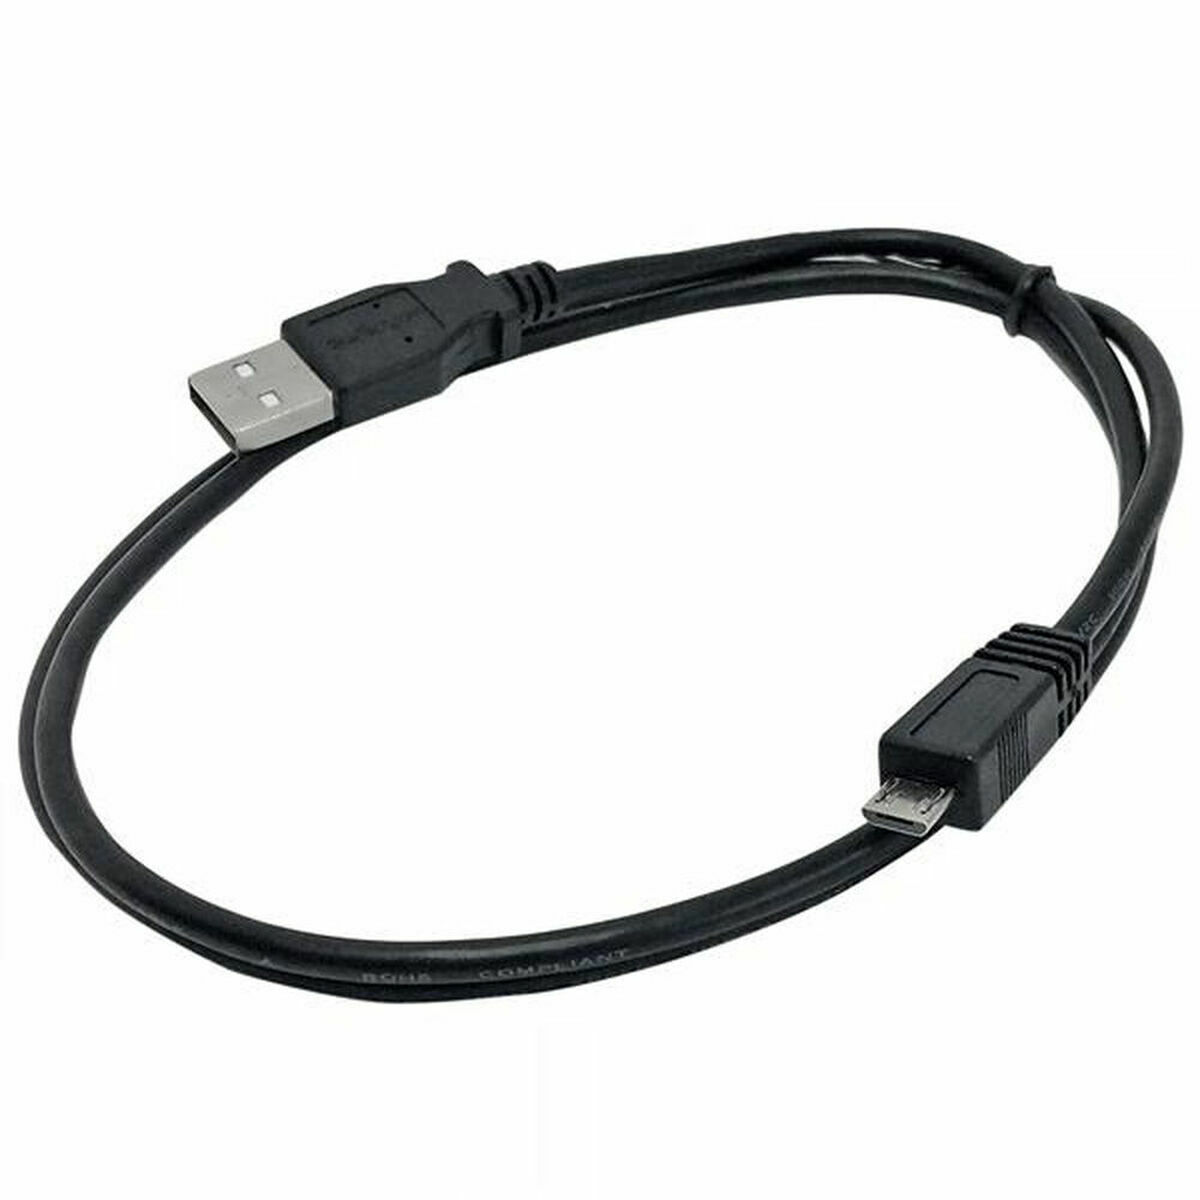 Osta tuote USB-kaapeli – Micro-USB Startech UUSBHAUB1M           USB A Micro USB B Musta verkkokaupastamme Korhone: Urheilu & Vapaa-aika 20% alennuksella koodilla VIIKONLOPPU